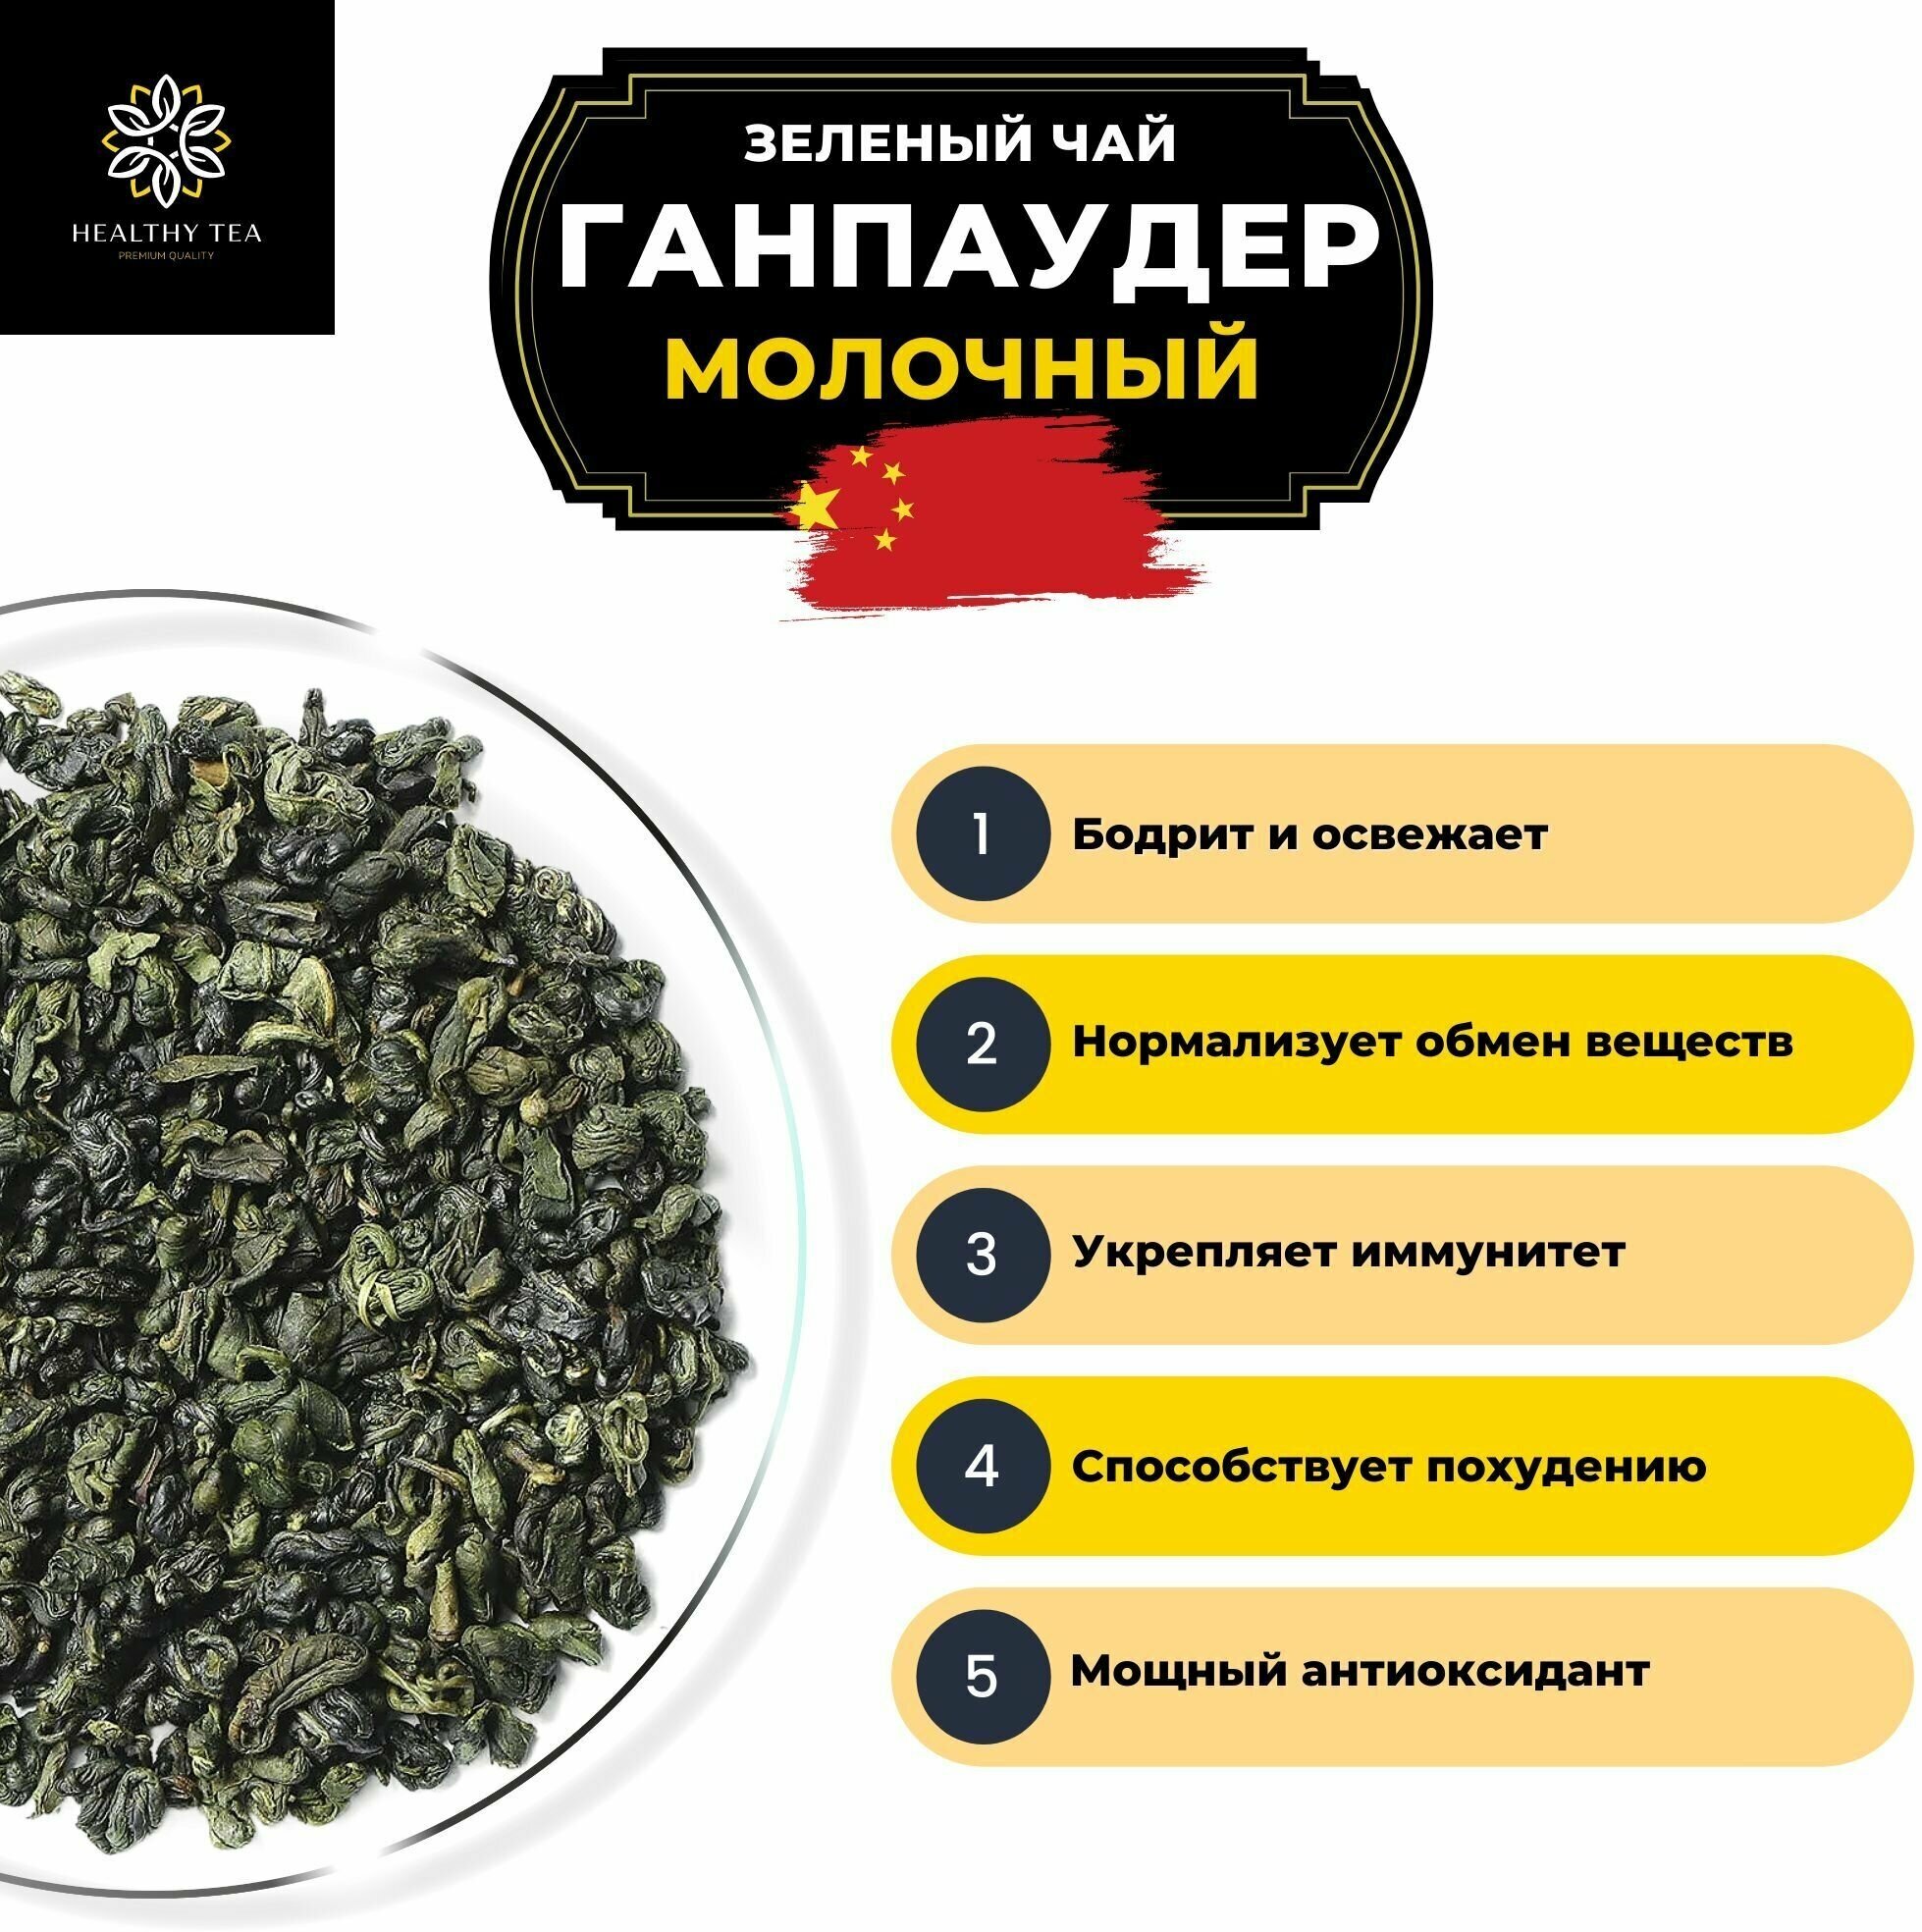 Китайский зеленый чай Ганпаудер Молочный Полезный чай / HEALTHY TEA, 250 г